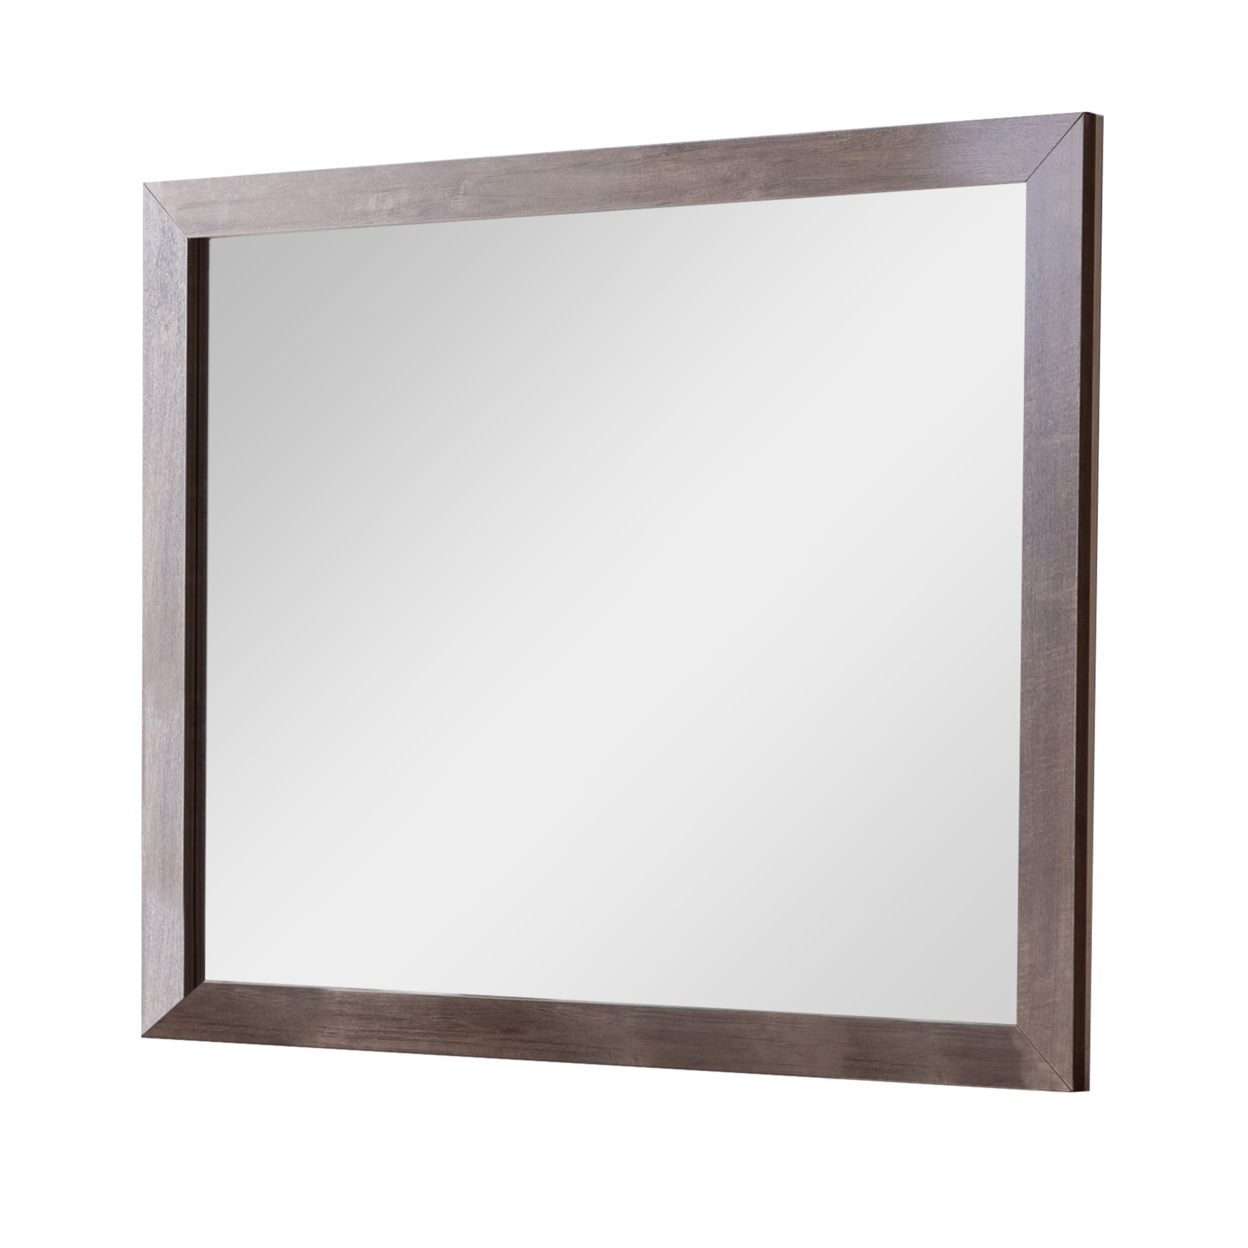 Rectangular Wooden Frame Mirror With Textured Details, Brown- Saltoro Sherpi